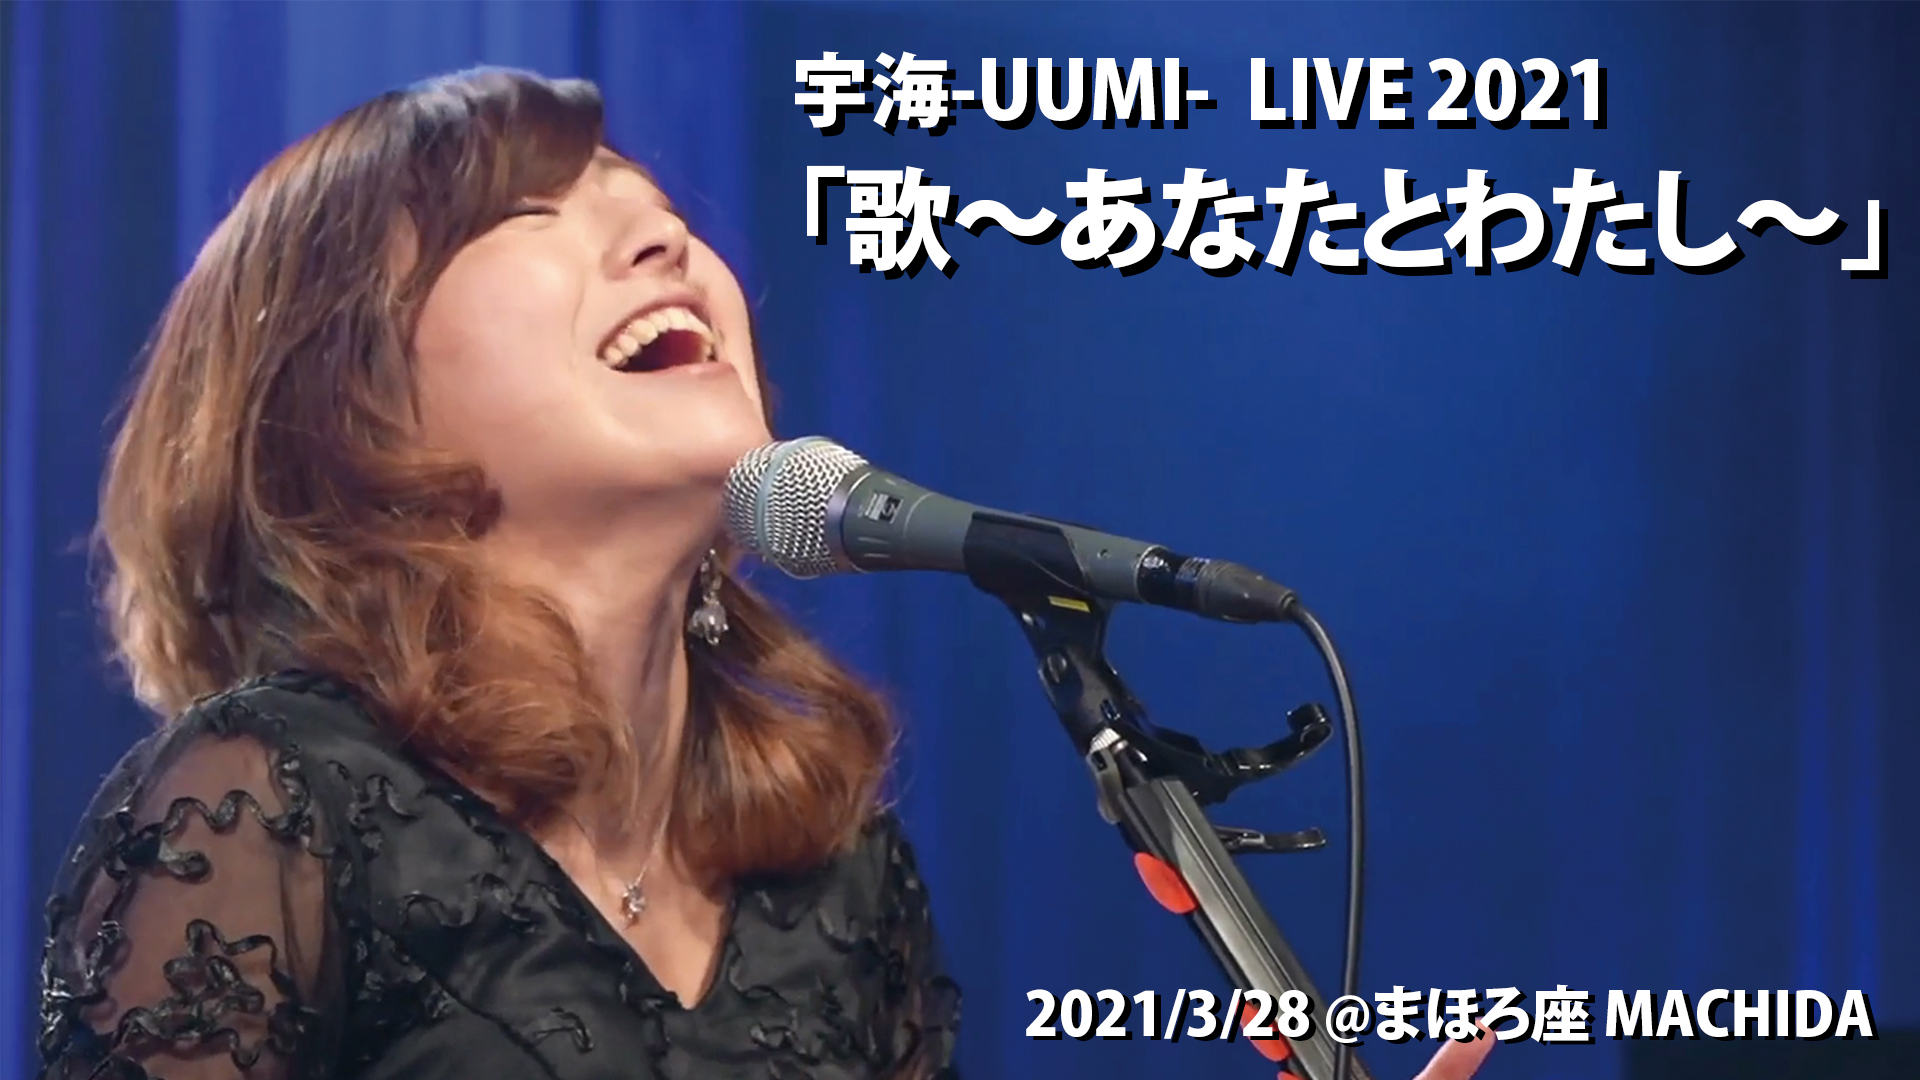 宇海-UUMI-LIVE 2021「歌〜あなたとわたし〜」